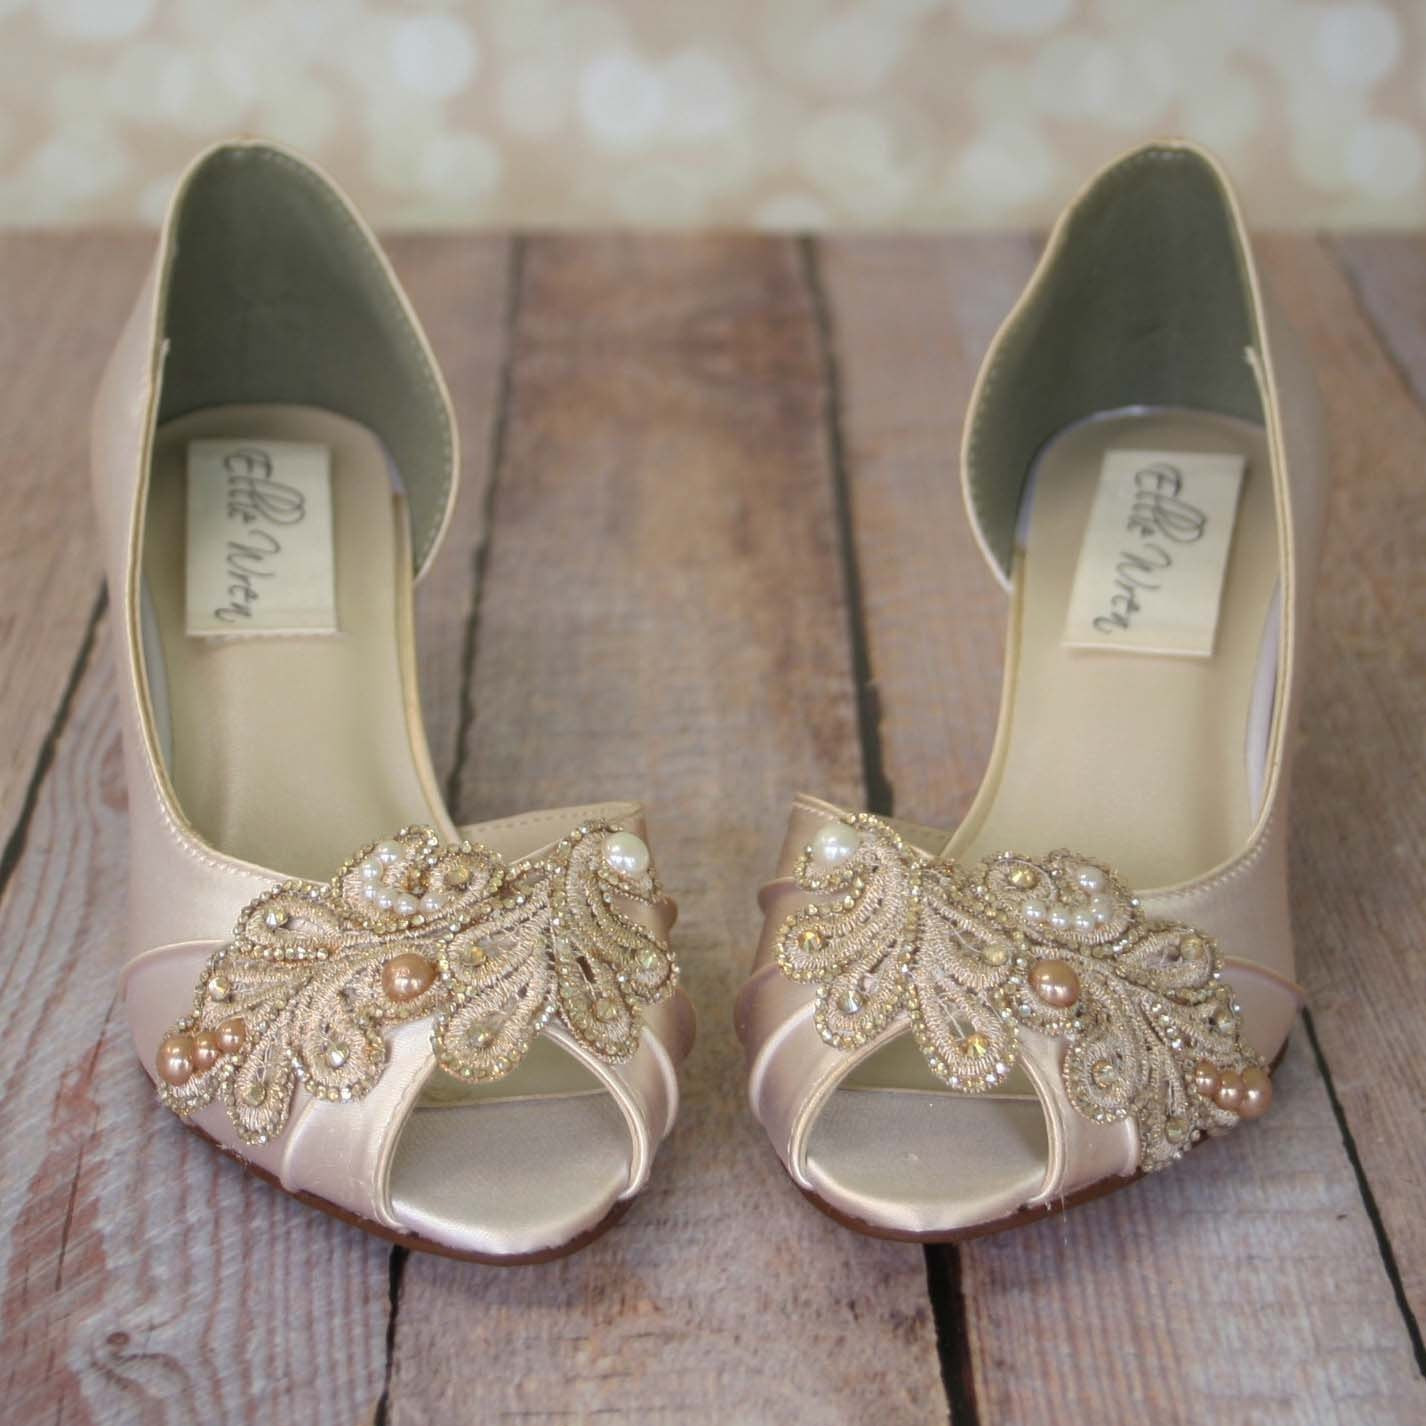 Wedding Shoes For Bride Ivory
 Ivory Wedding Shoes Champagne Wedding Shoes Ivory Bridal